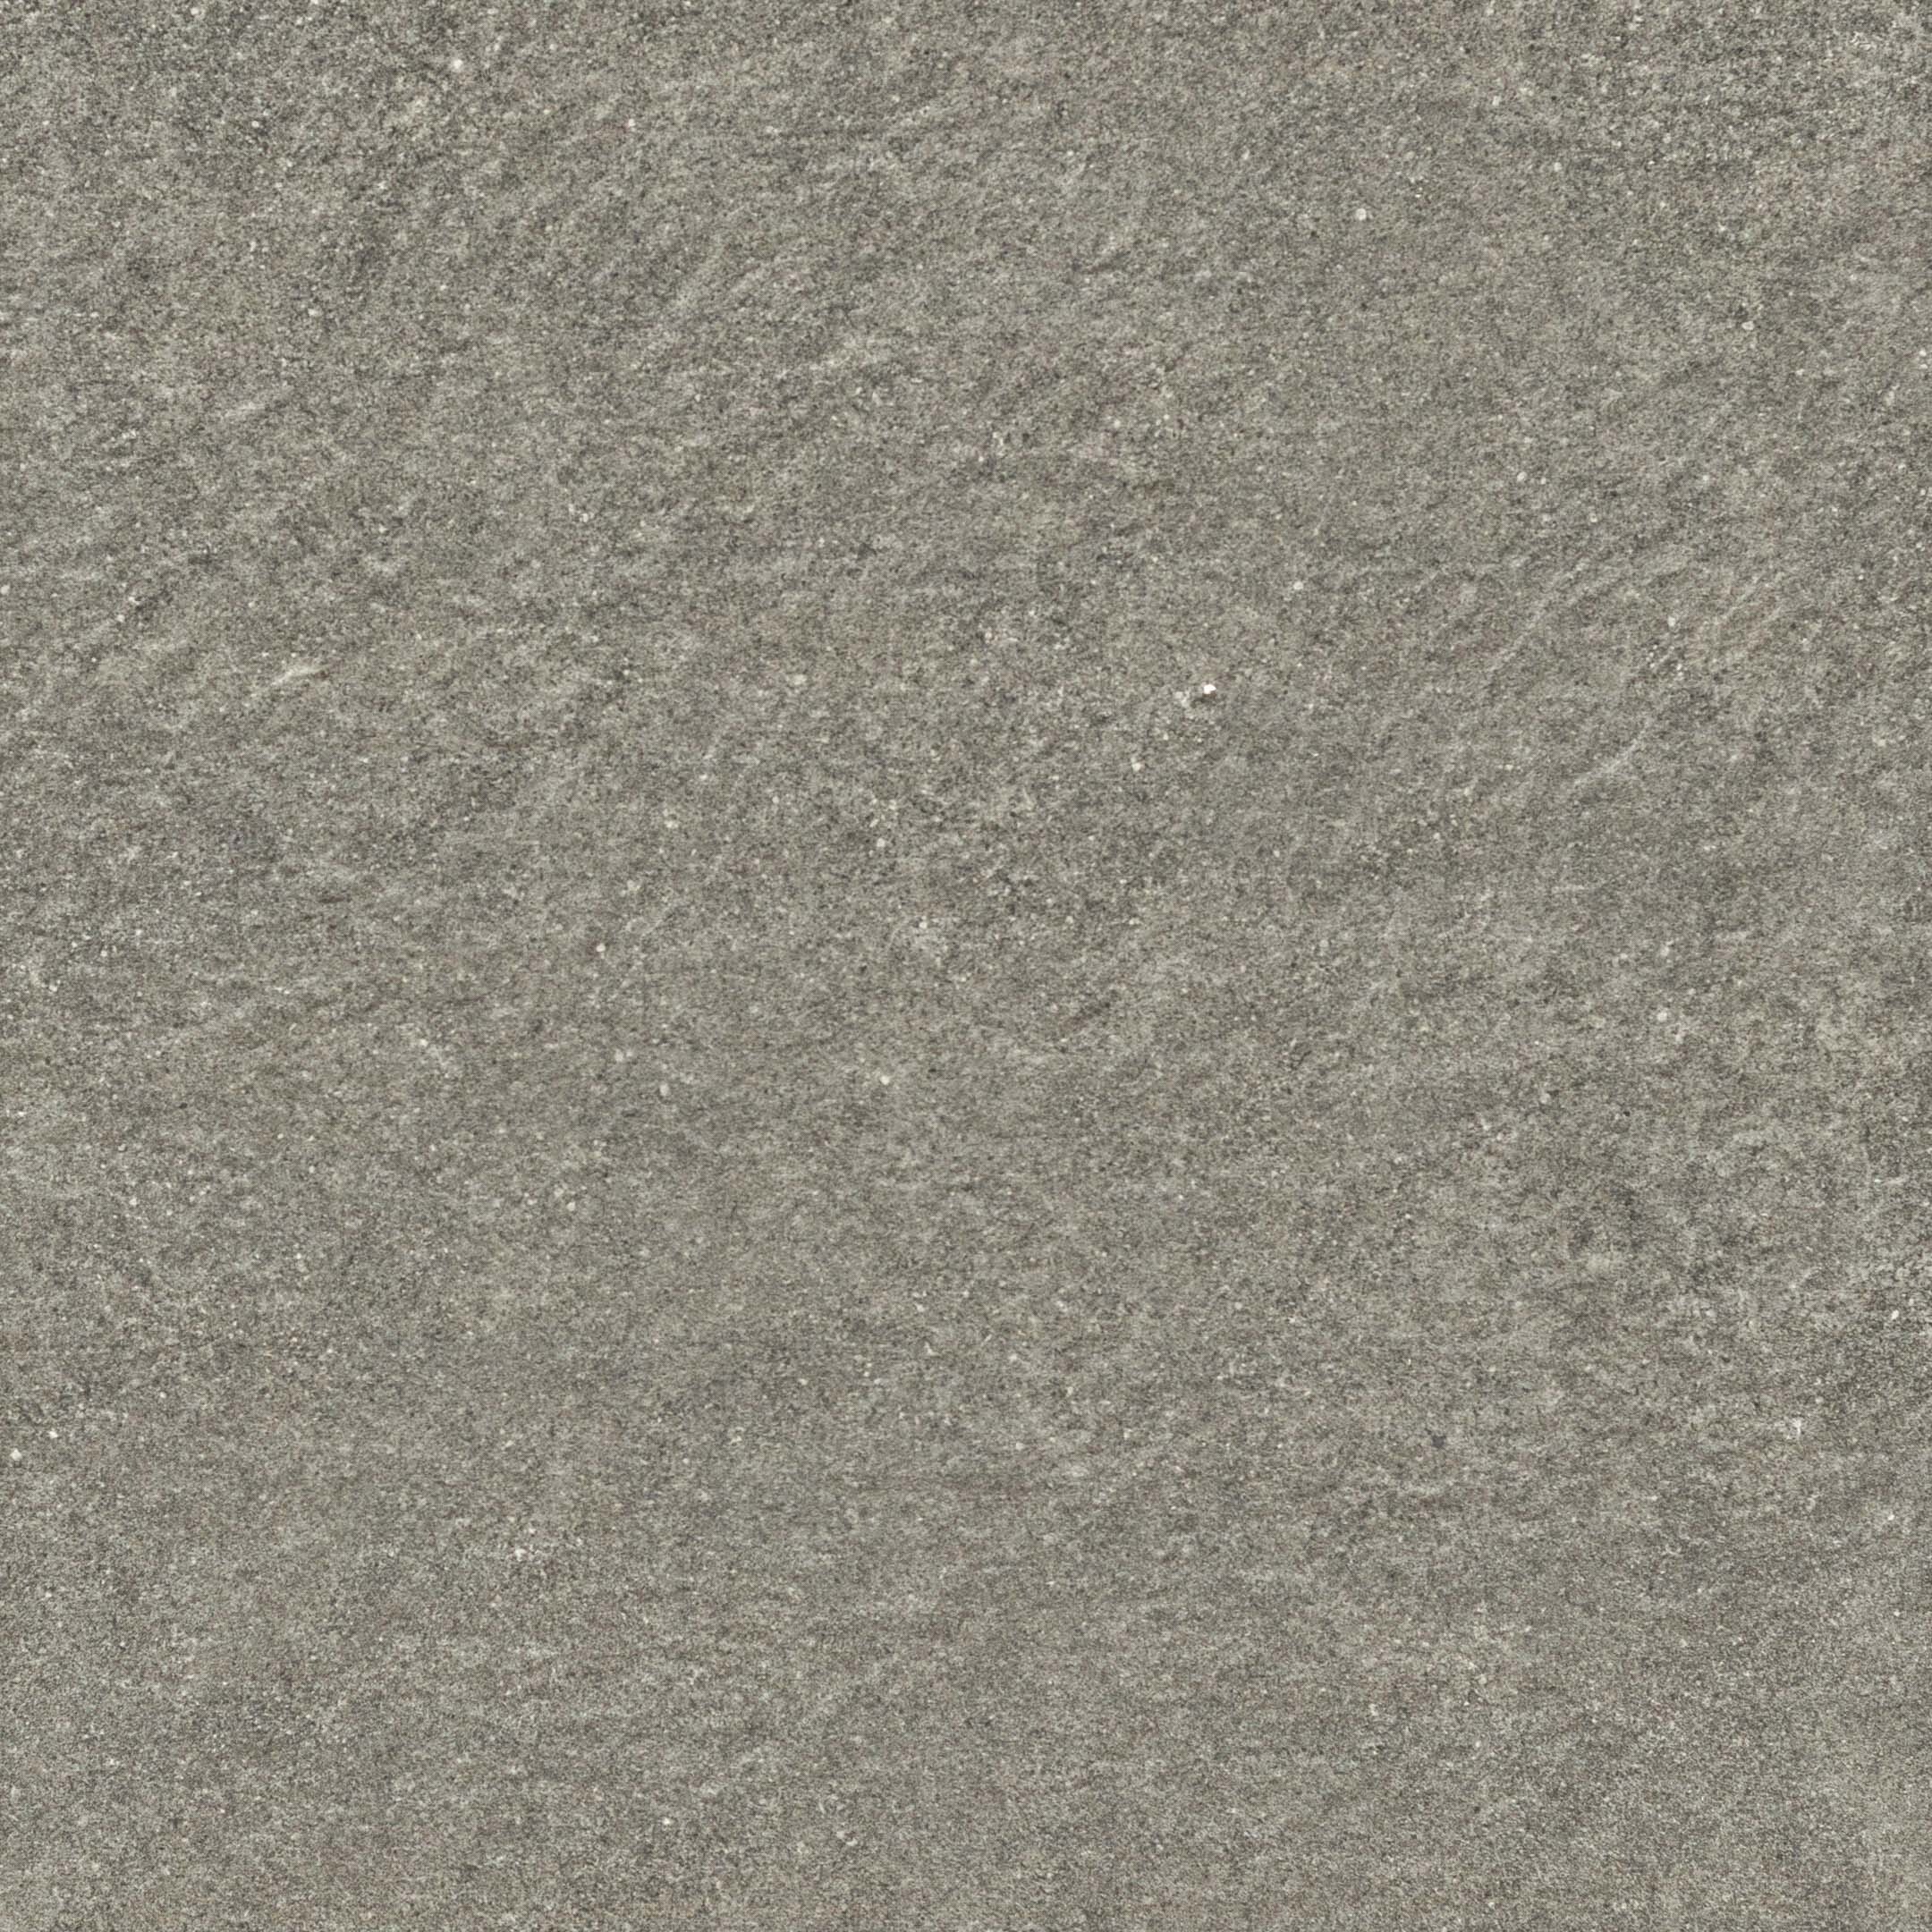 фото Керамогранит onlygres cement cog501 серый 600х600х20 мм (2 шт.=0,72 кв.м)